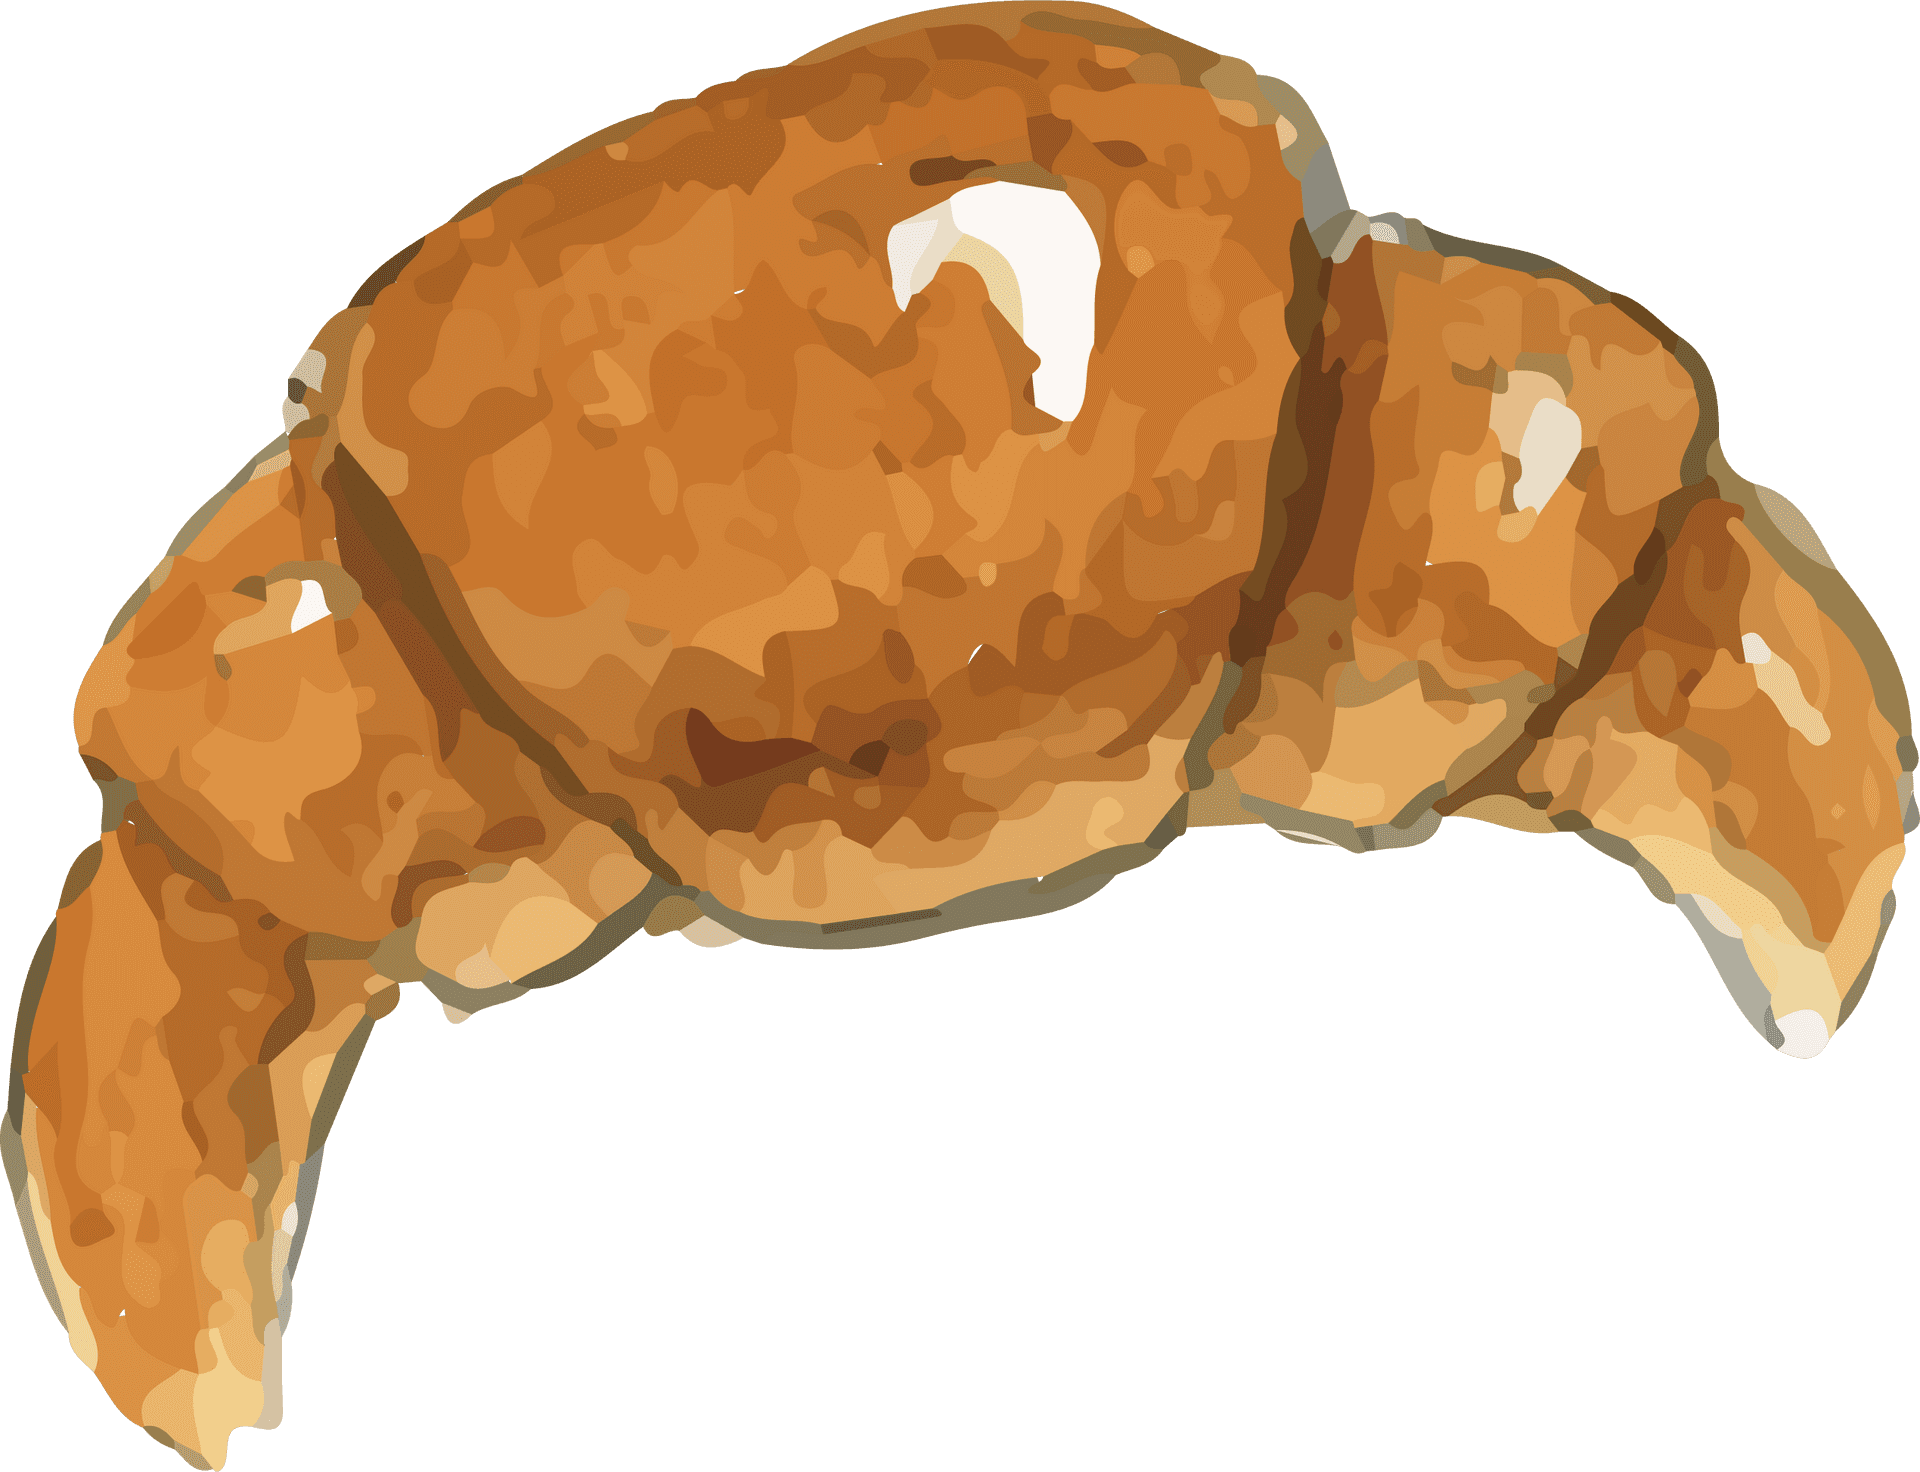 Golden Croissant Illustration PNG